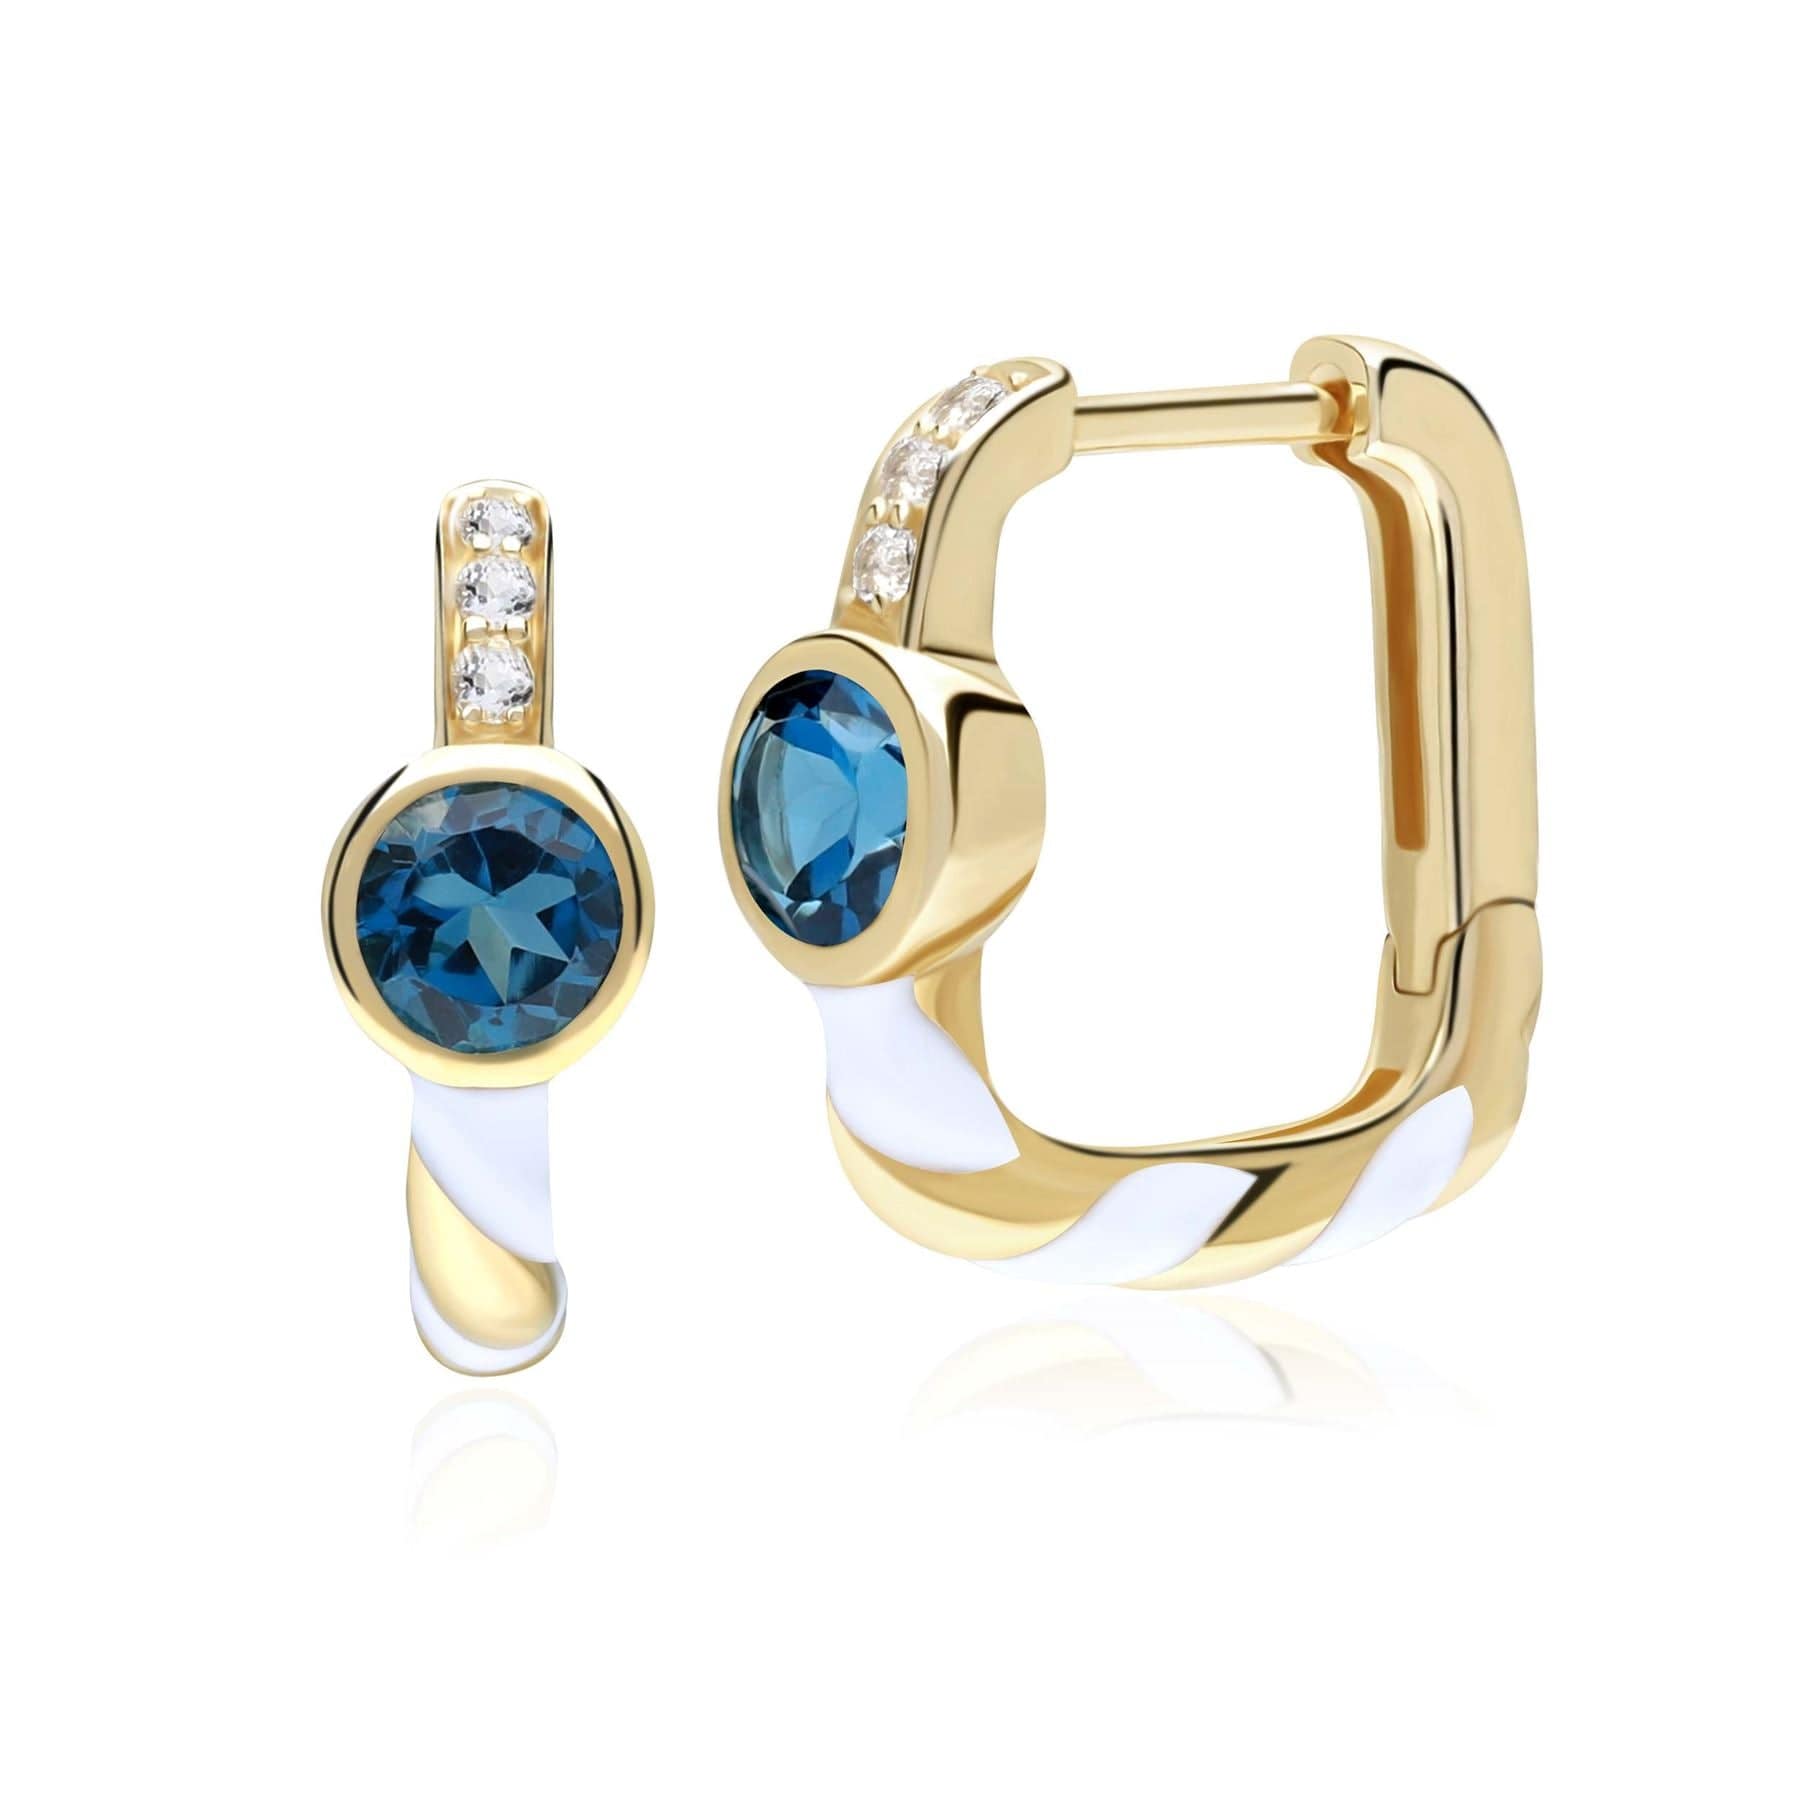 Gemondo Siberian Waltz London Blue Topaz Square Hoop Earrings in 9ct Gold